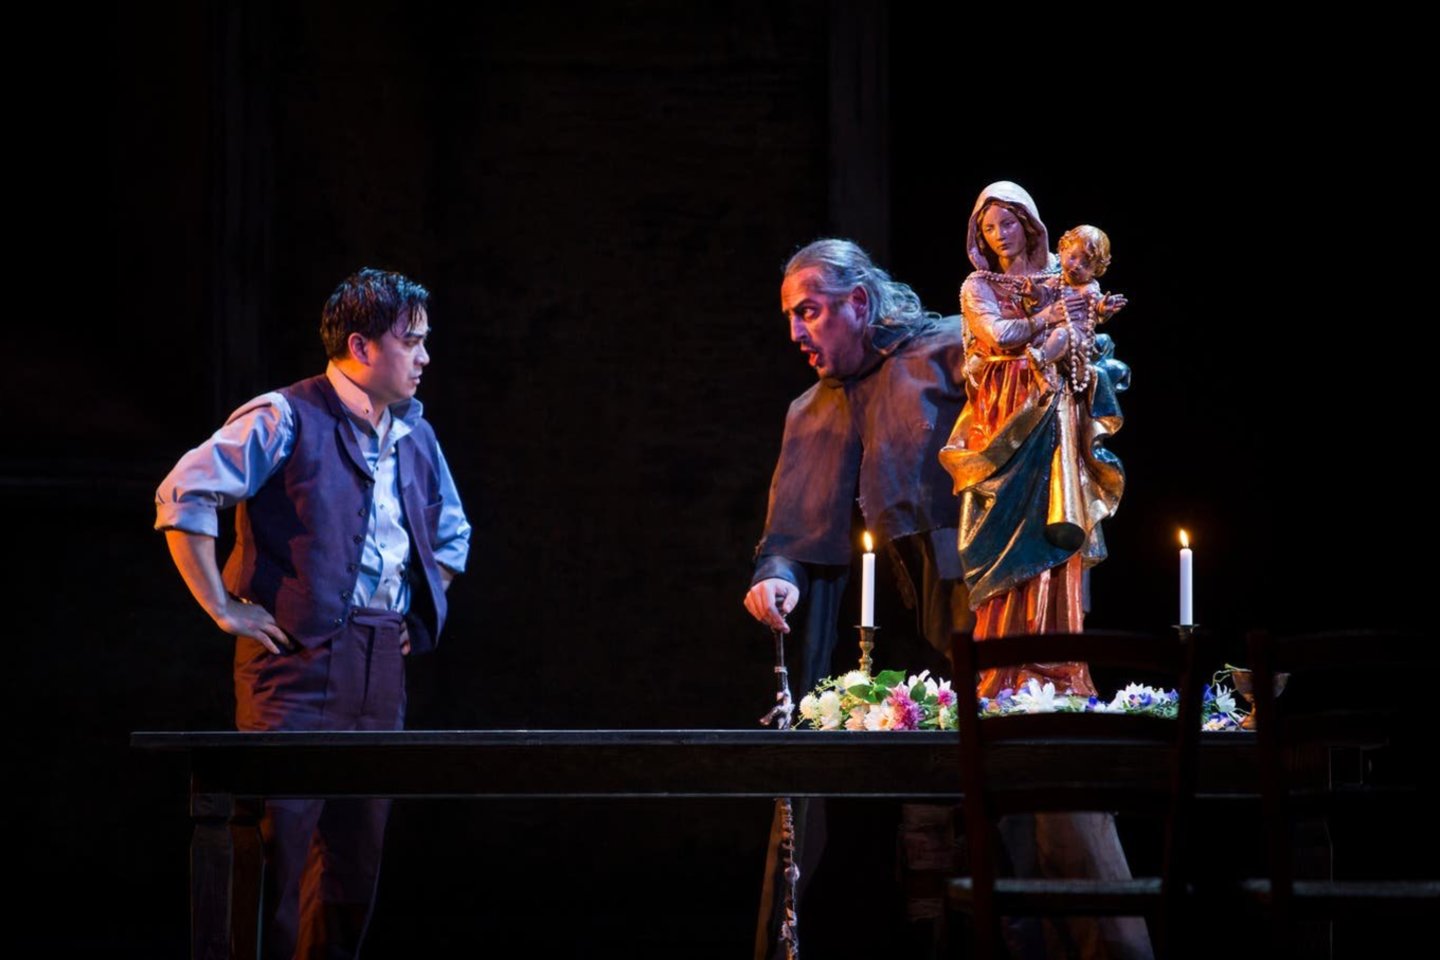  T.Girininkas (dešinėje) debiutavo Sankt Galeno teatre Mefistofelio vaidmeniu „Fauste“.<br>  Sankt Galeno teatro nuotr.